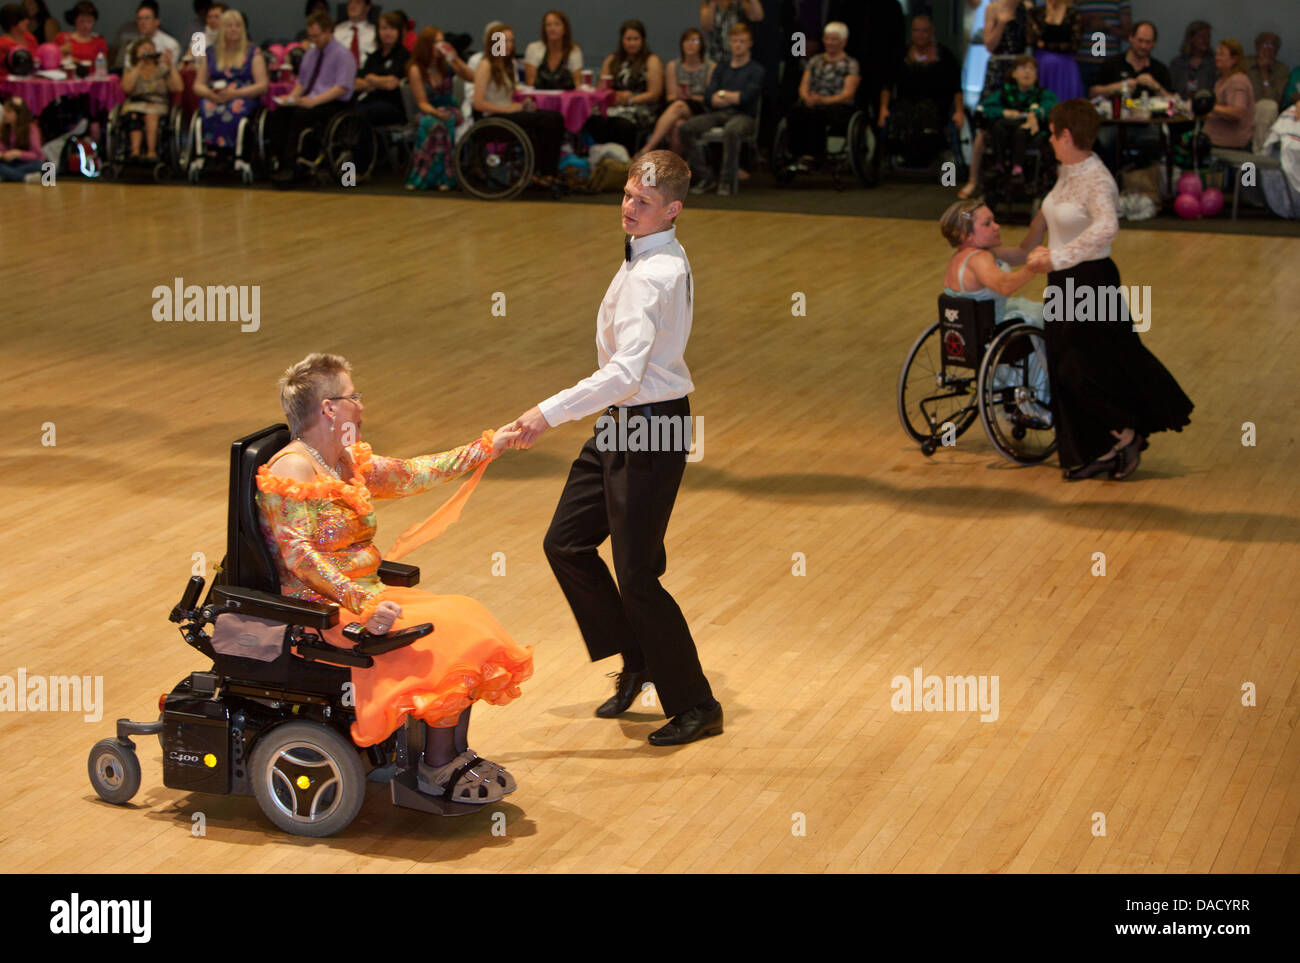 Konkurrenten beim Grand Prix internationale Rollstuhl Dancesport Wettbewerb 2013 Wythenshawe Forum, Manchester Stockfoto